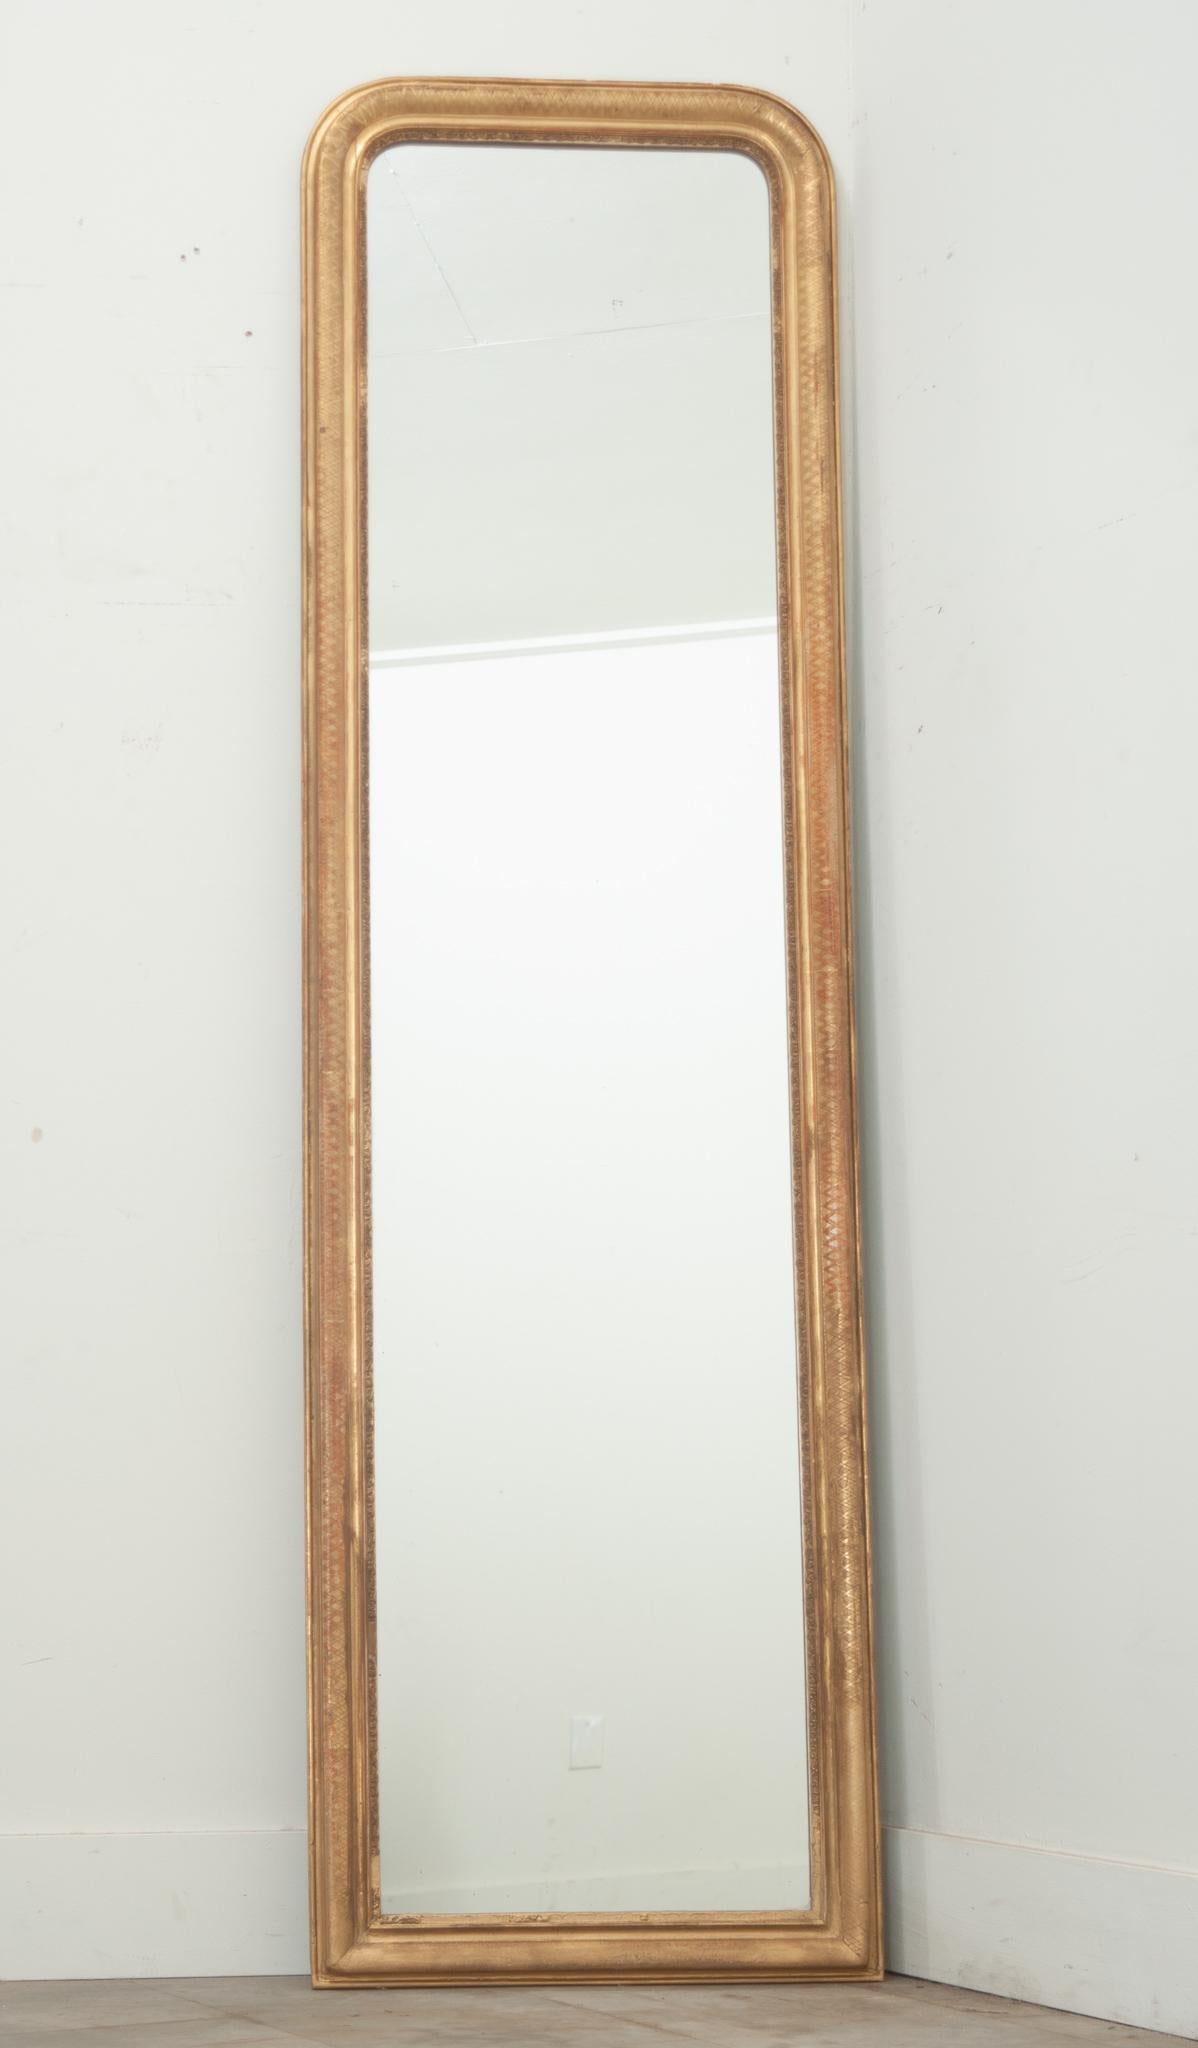 Miroir de coiffeuse Louis Philippe, haut et étroit, fabriqué en France. La dorure d'origine du cadre présente une certaine patine, l'usure naturelle ayant révélé la couche de base rougeâtre du bole et créé un contraste unique avec la finition dorée.